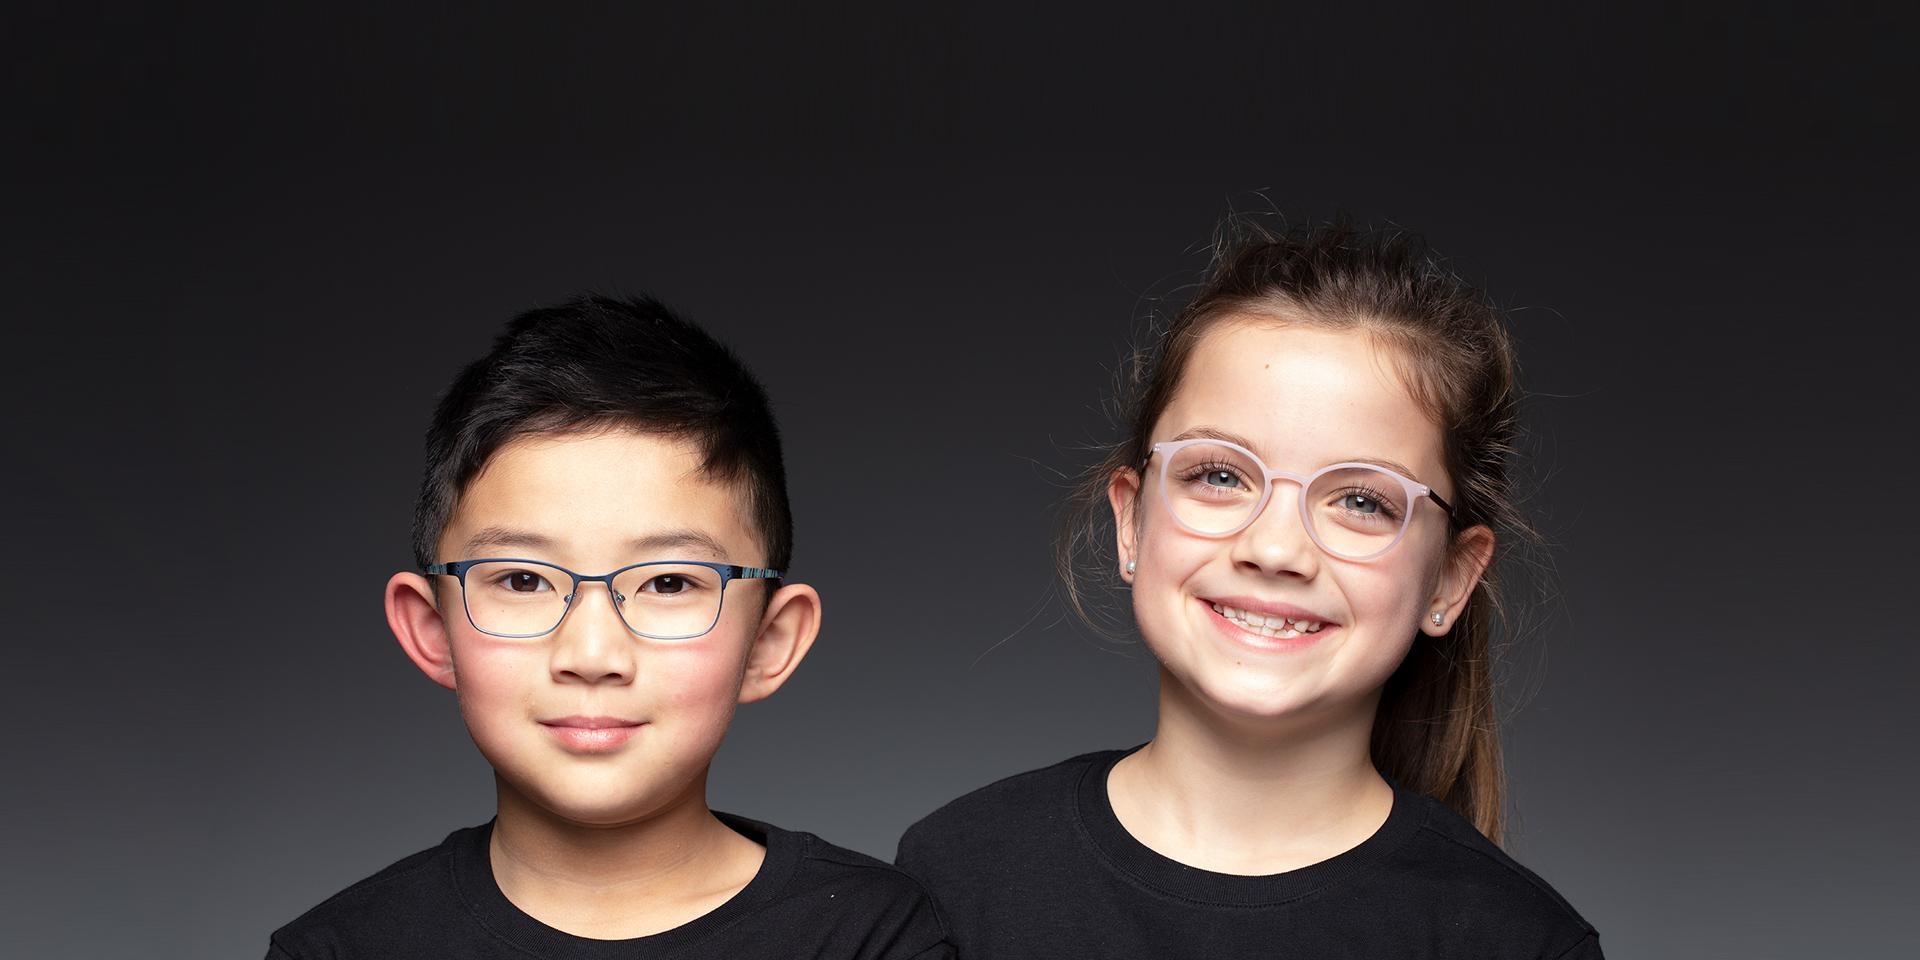 Miksi lasten silmälasit tarvitsevat parhaan UV-suojan?